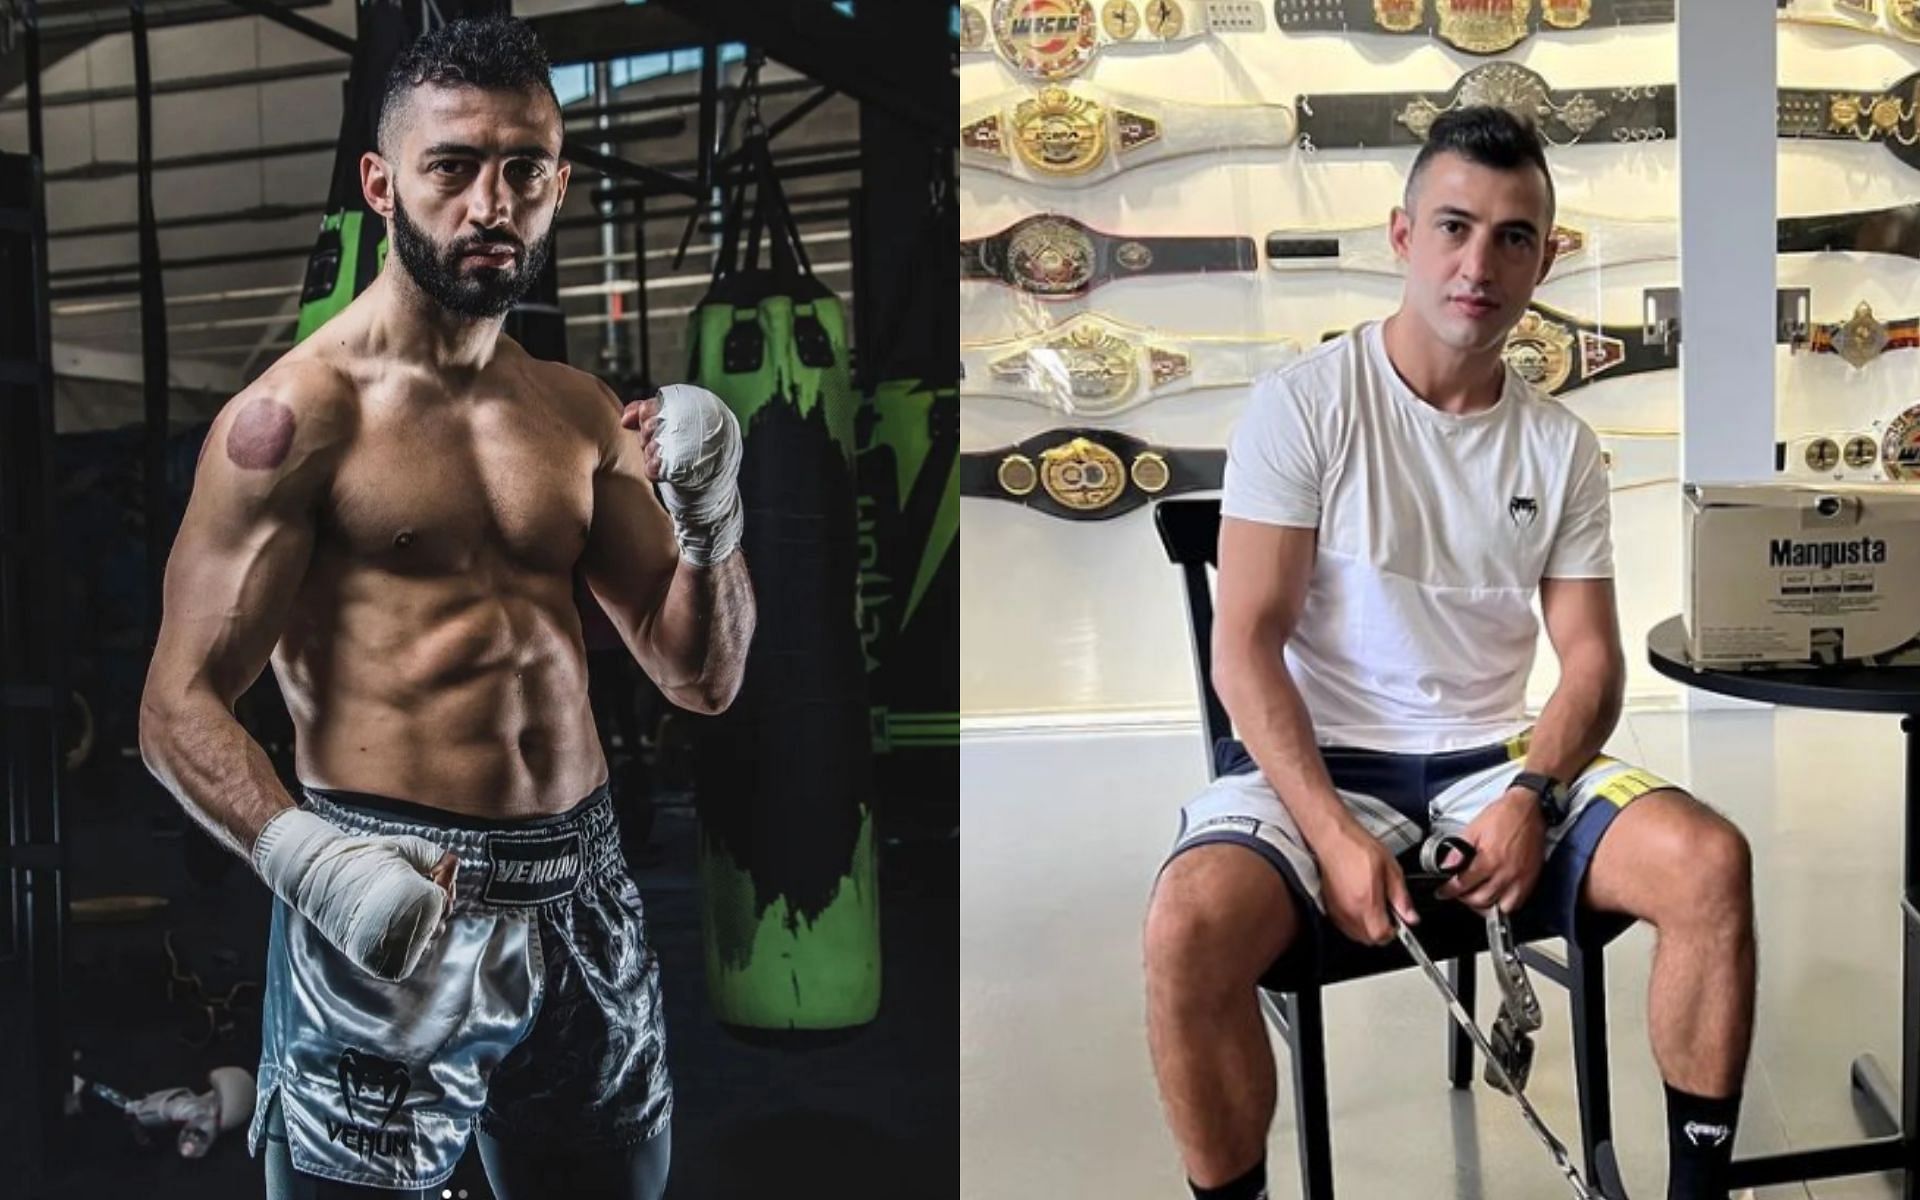 Kickboxing legend Giorgio Petrosyan [Credit: Instagram @giorgiopetrosyan]